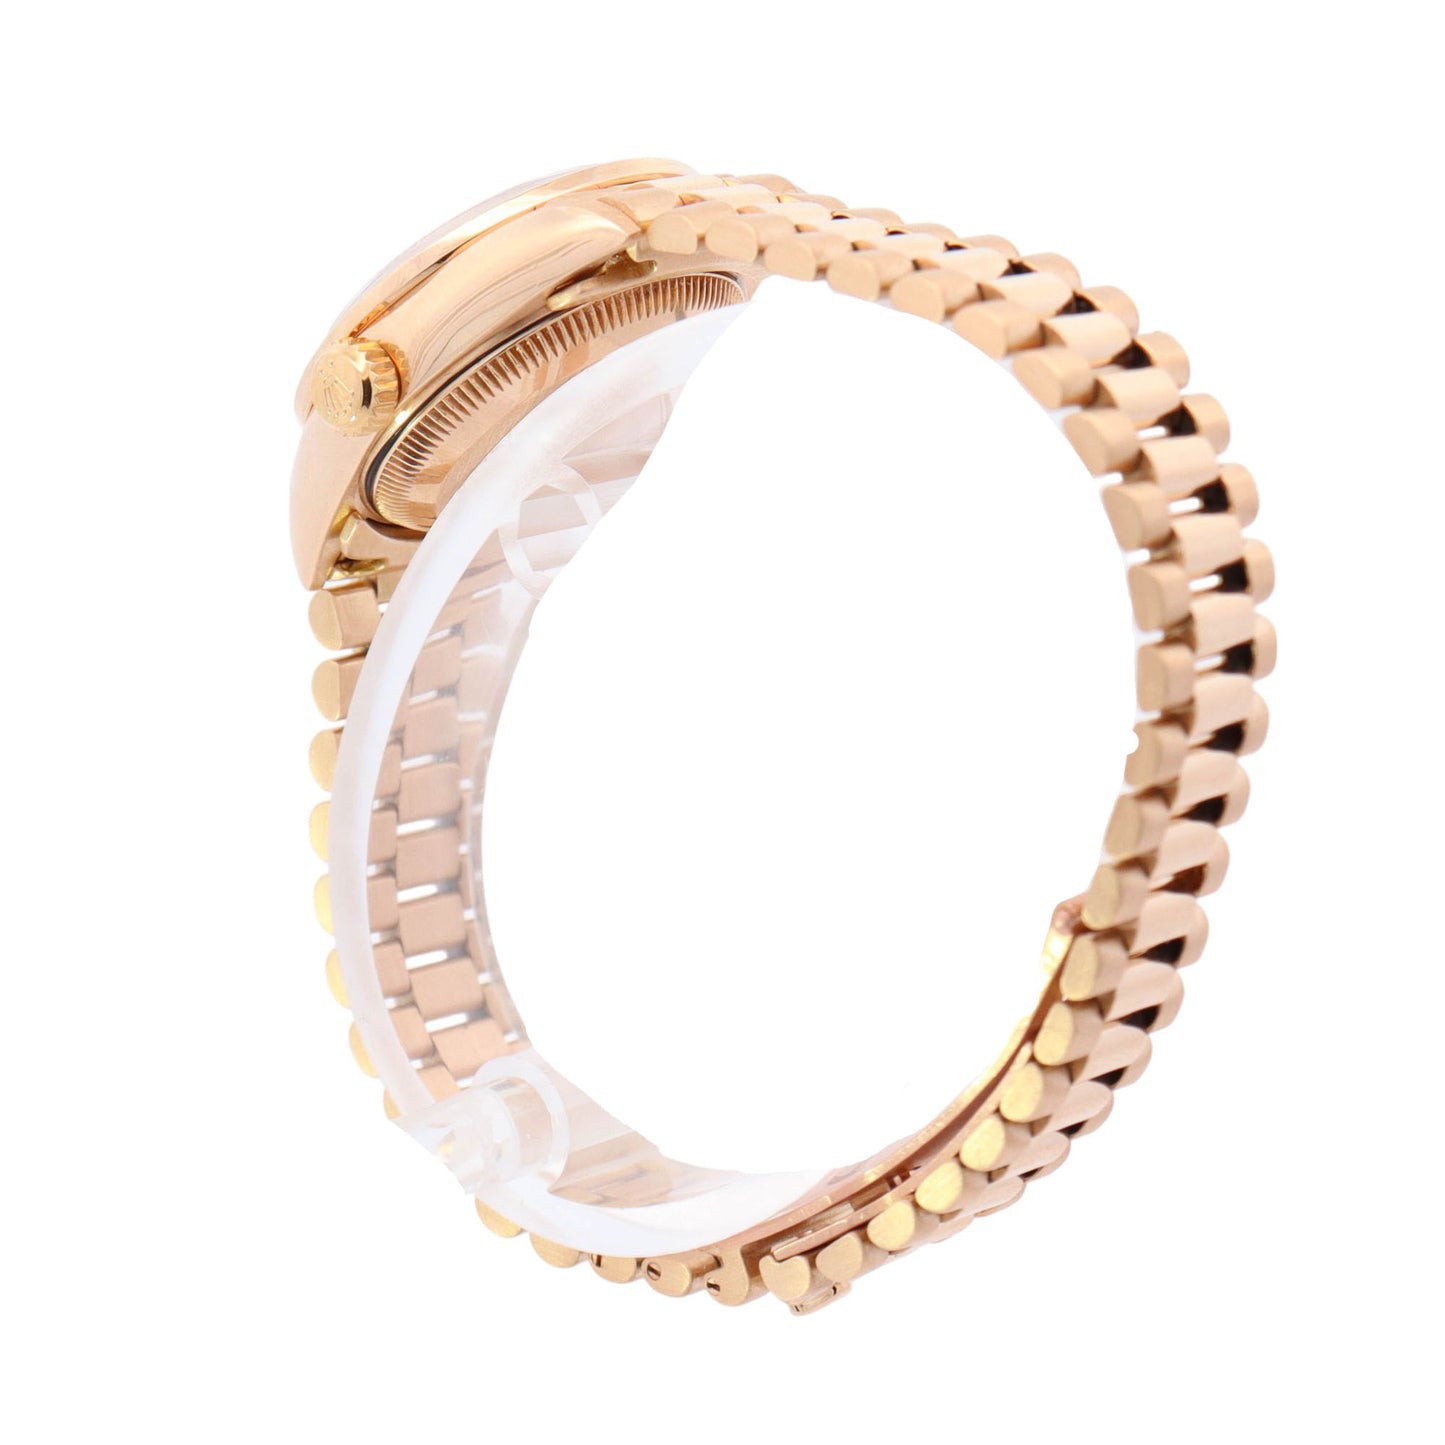 Rolex Datejust Yellow Gold 26mm Champagne Diamond Dial Watch Ref# 69138 - Happy Jewelers Fine Jewelry Lifetime Warranty